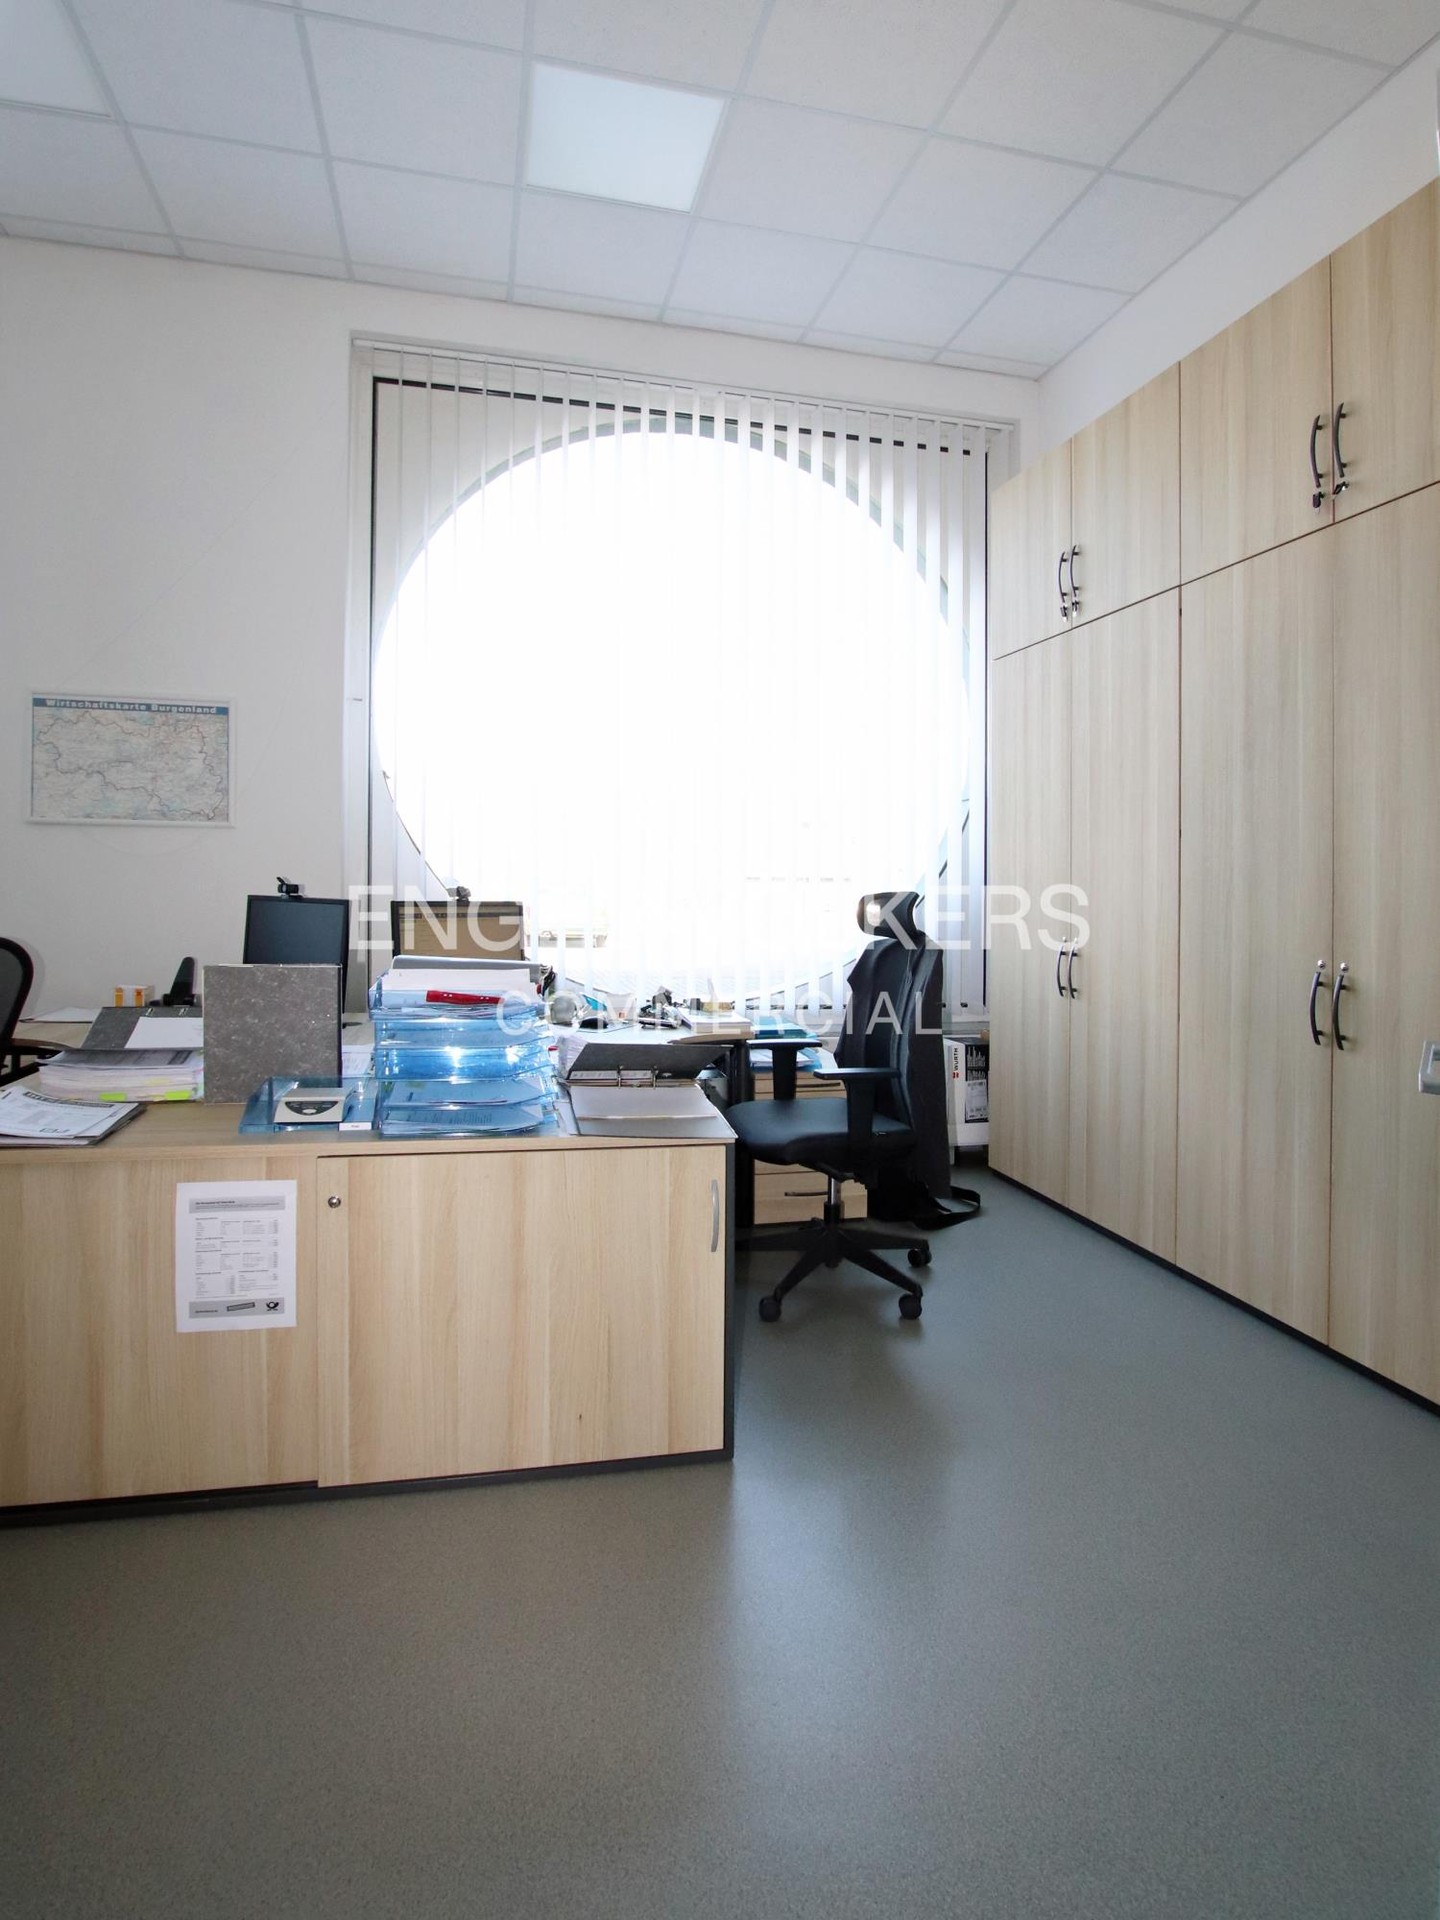 Investment / Wohn- und Geschäftshäuser in Freyburg - Büro